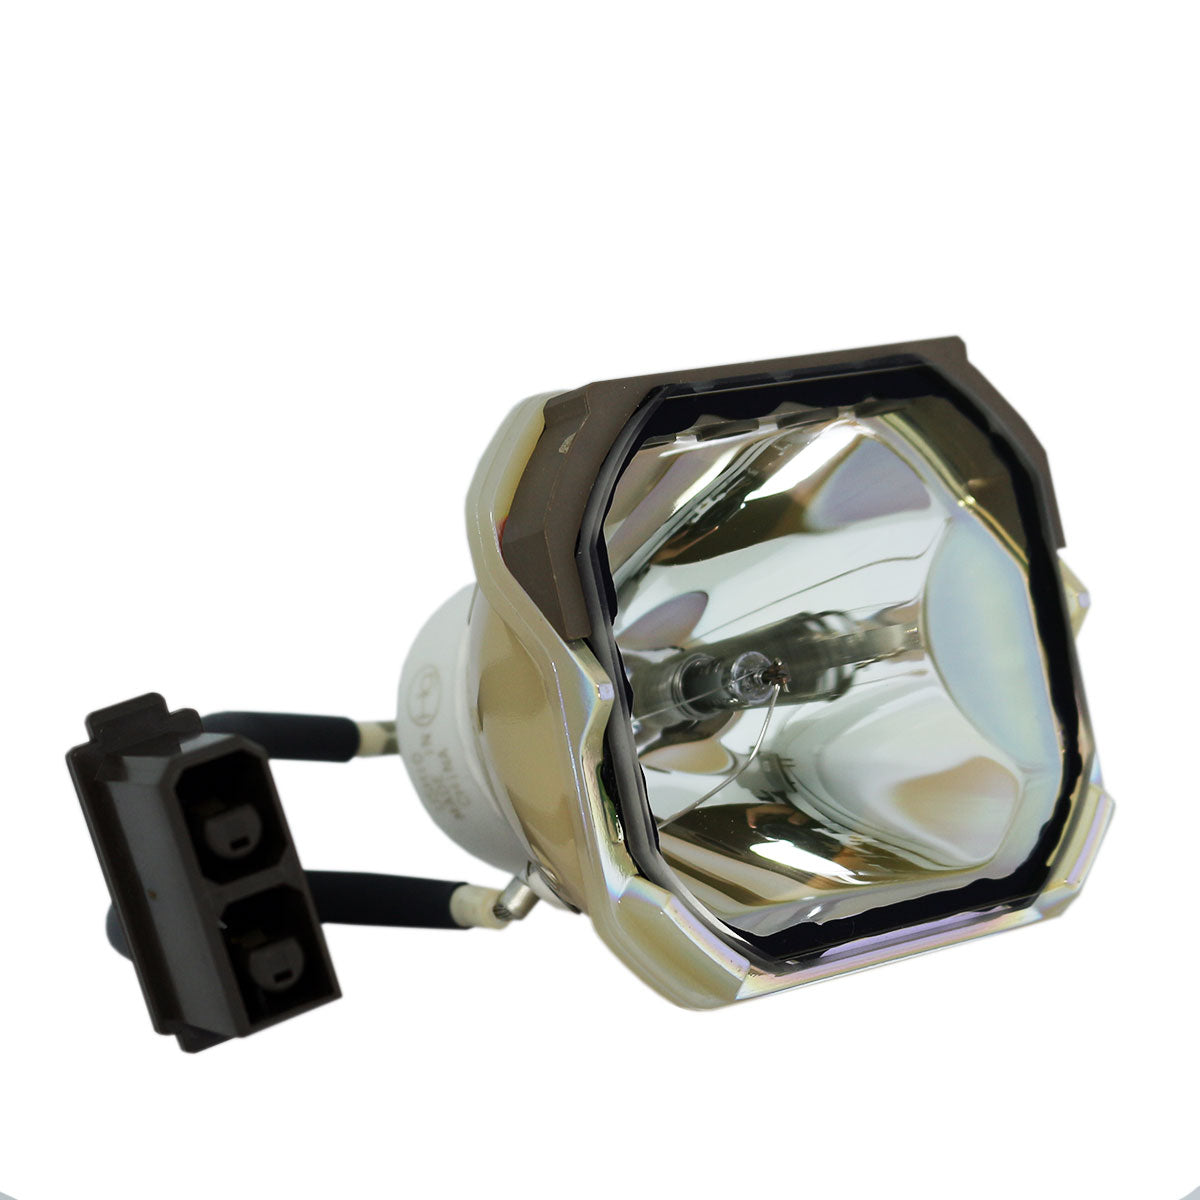 Boxlight MP86i-930 Ushio Projector Bare Lamp